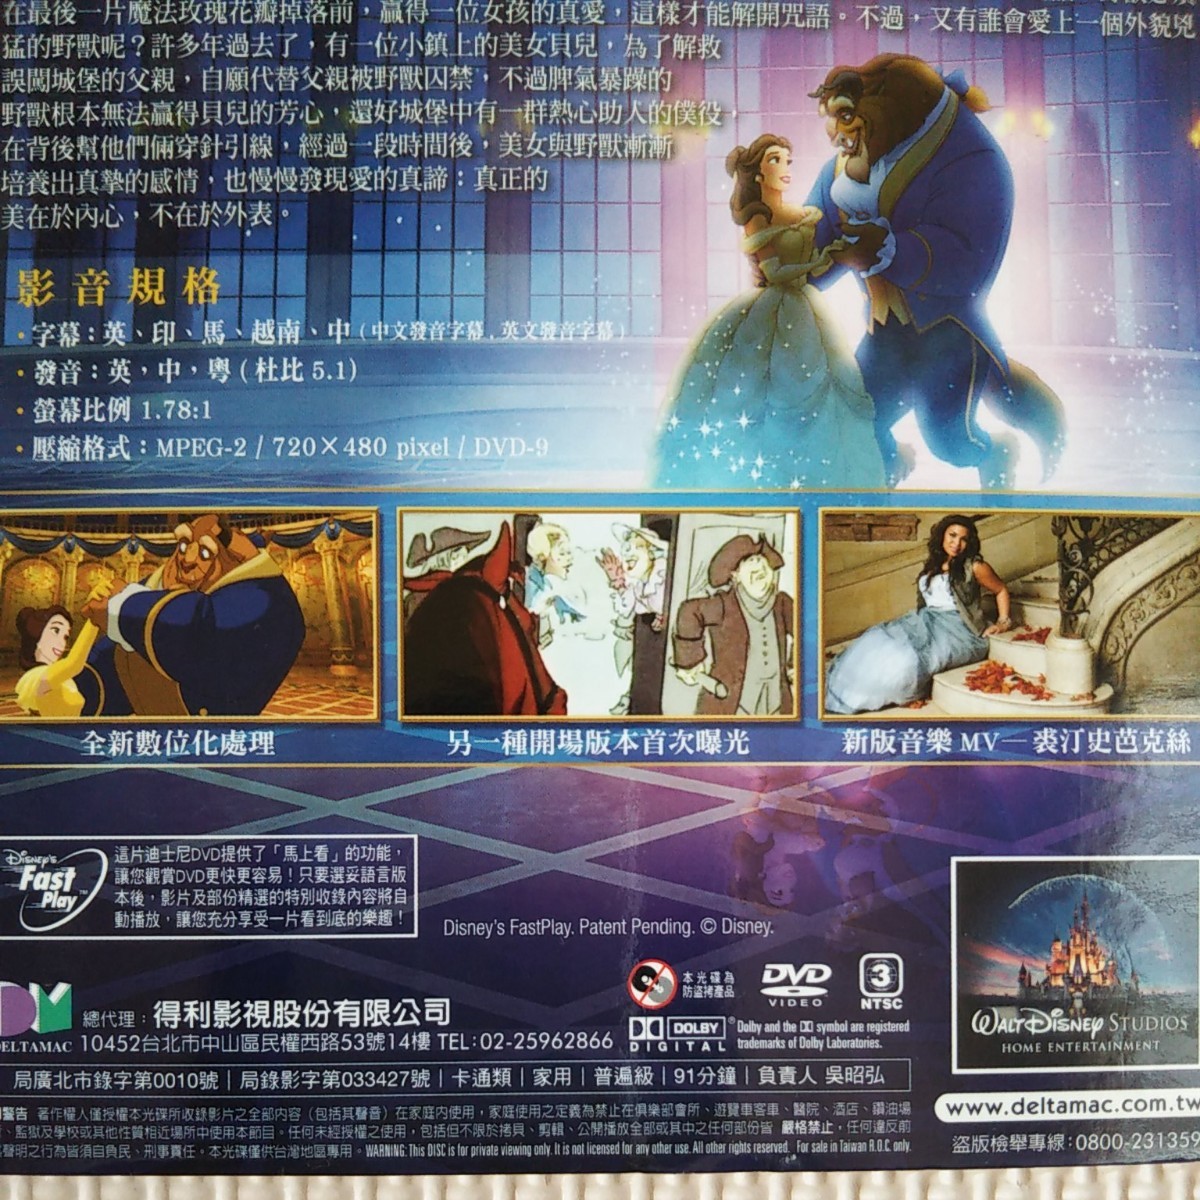 ディズニー 『美女と野獣』 DVD  台湾バージョン